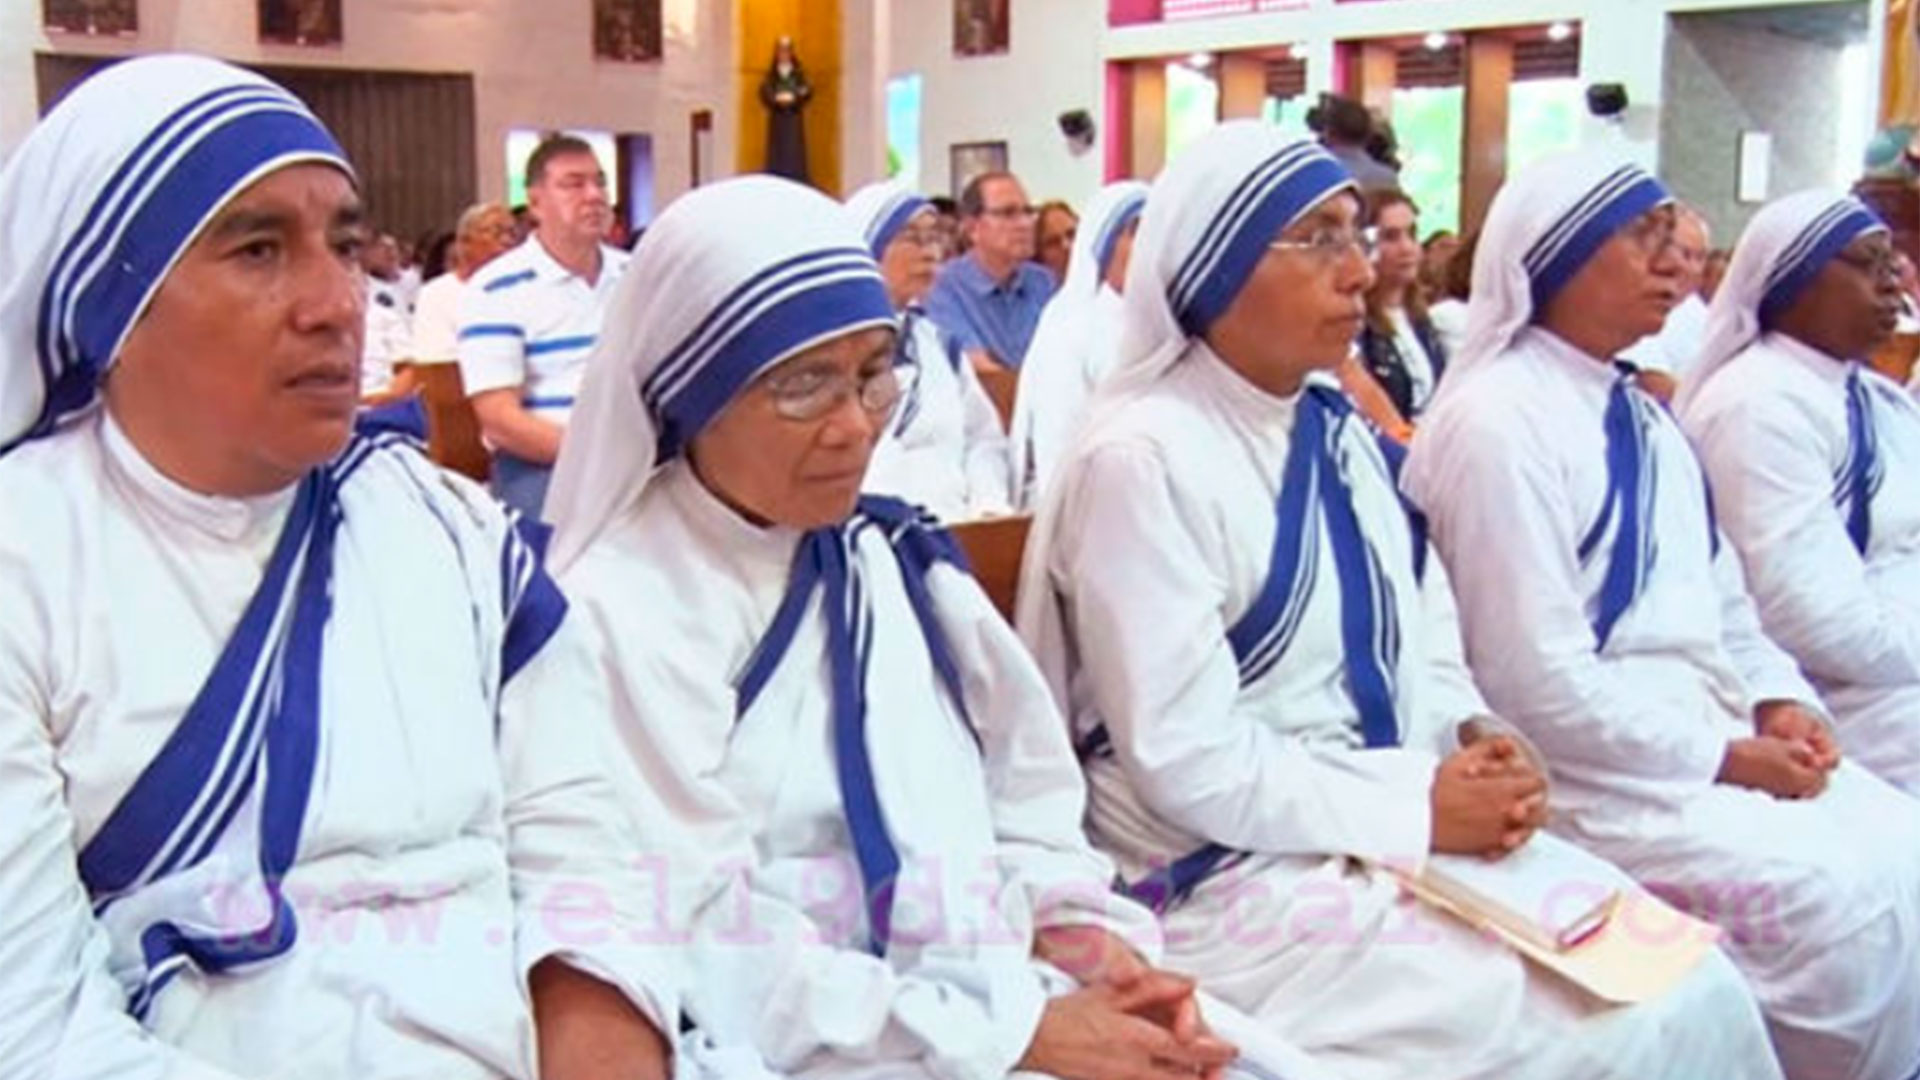 La Asociación Misioneras de la Caridad fue creada el 16 de agosto de 1988 tras una visita a Nicaragua de la Madre Teresa de Calcuta, en la que se reunió con Daniel Ortega en su primer mandato presidencial